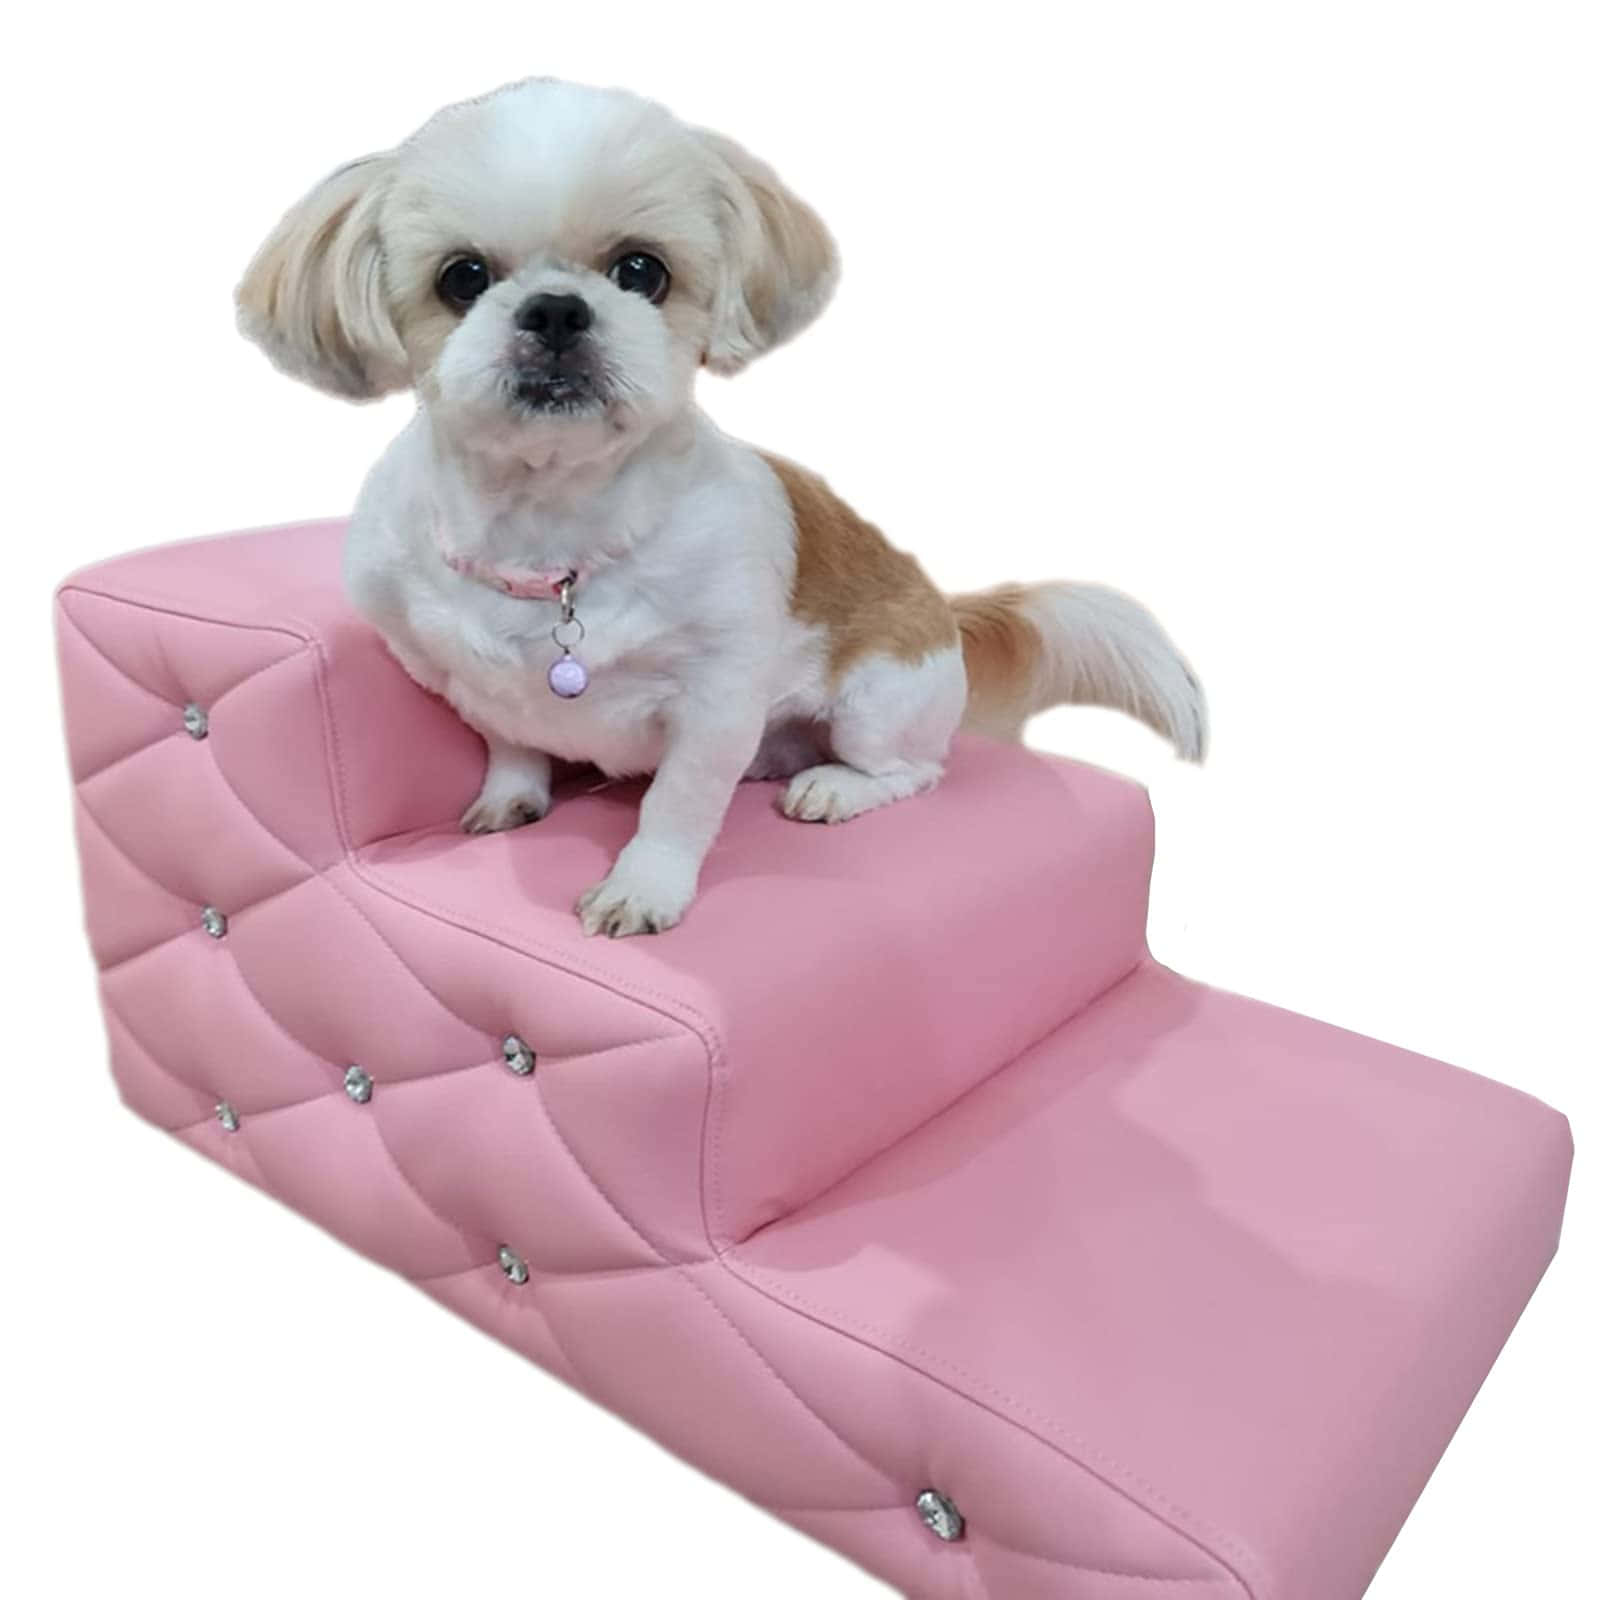 Unpequeño Perro Sentado En Un Taburete Rosa Acolchado Fondo de pantalla